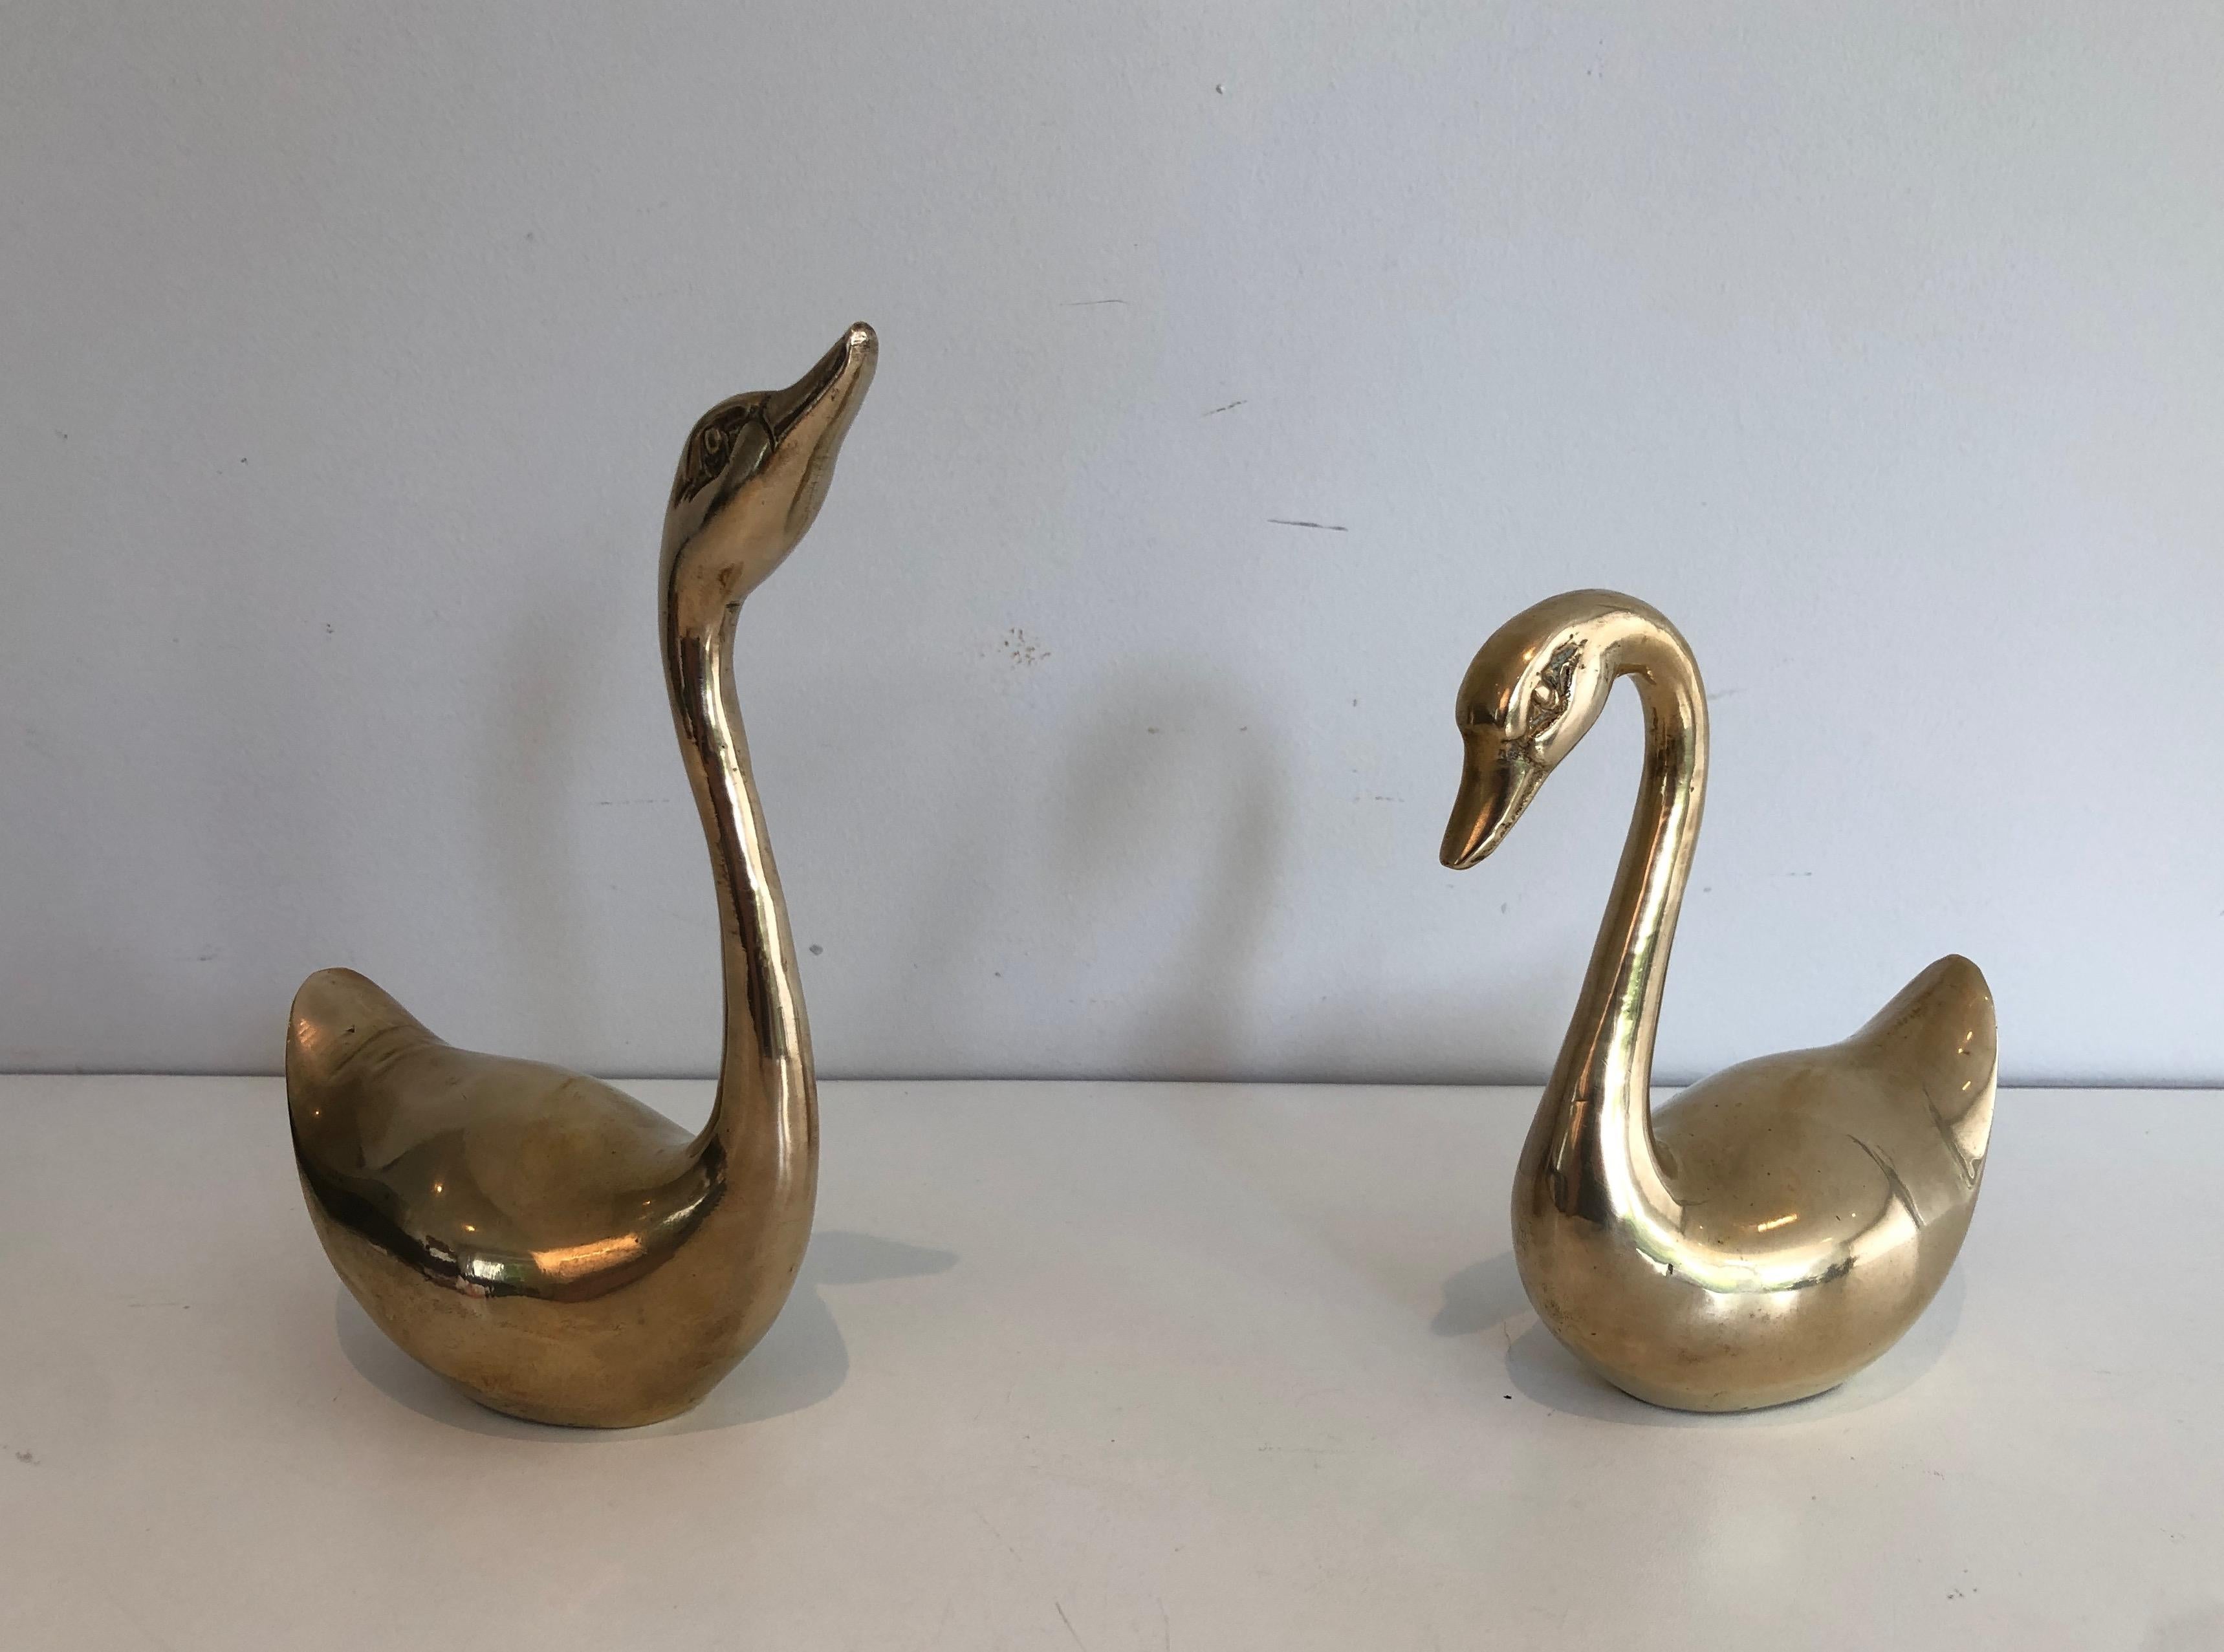 Cette paire de petits canards décoratifs est fabriquée en laiton. Il s'agit d'une œuvre française, datant d'environ 1970.